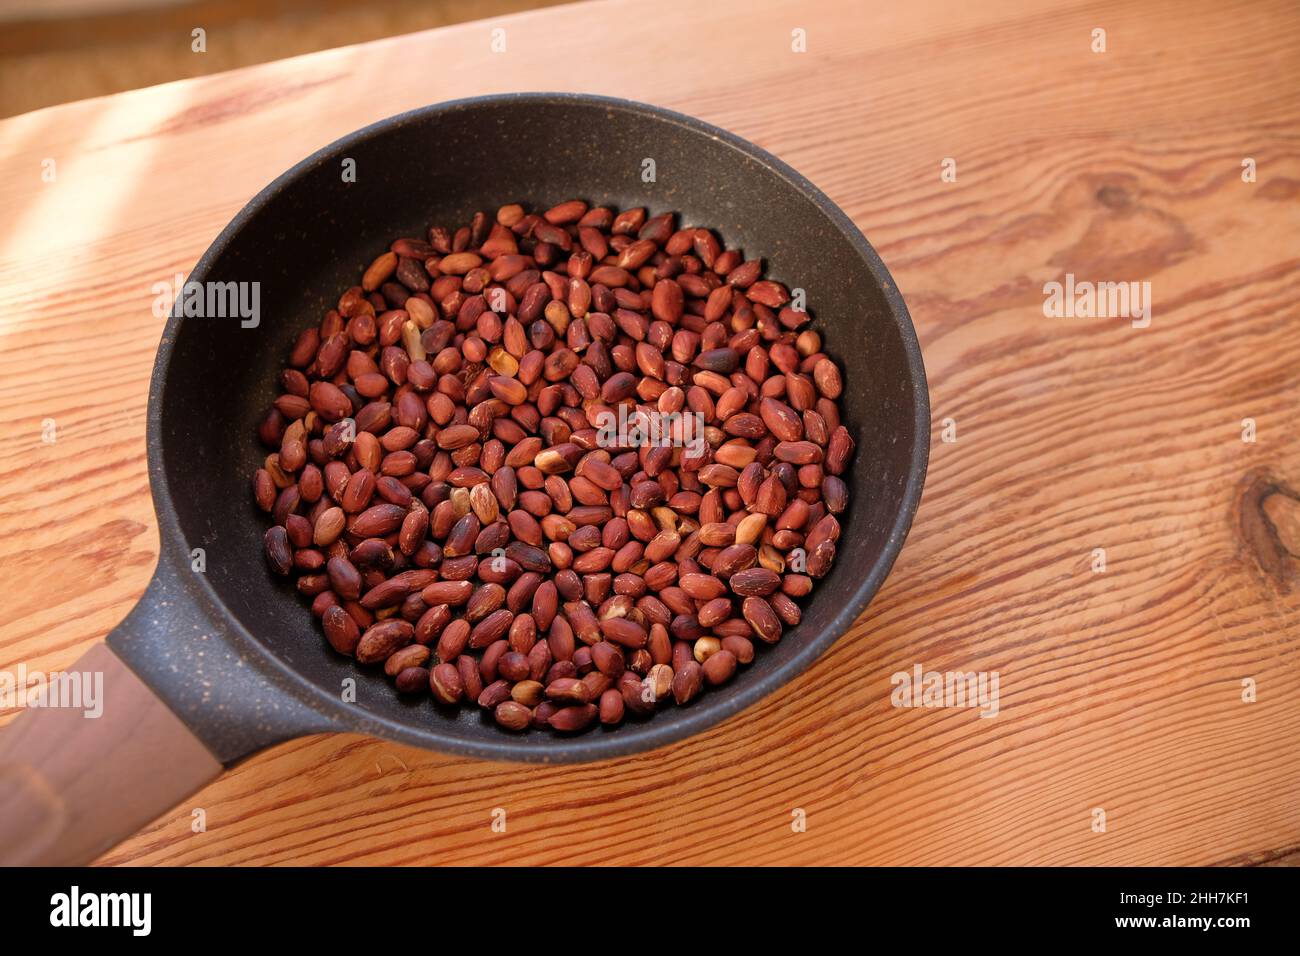 Les arachides frites dans une poêle à frire sur une table en bois. Banque D'Images